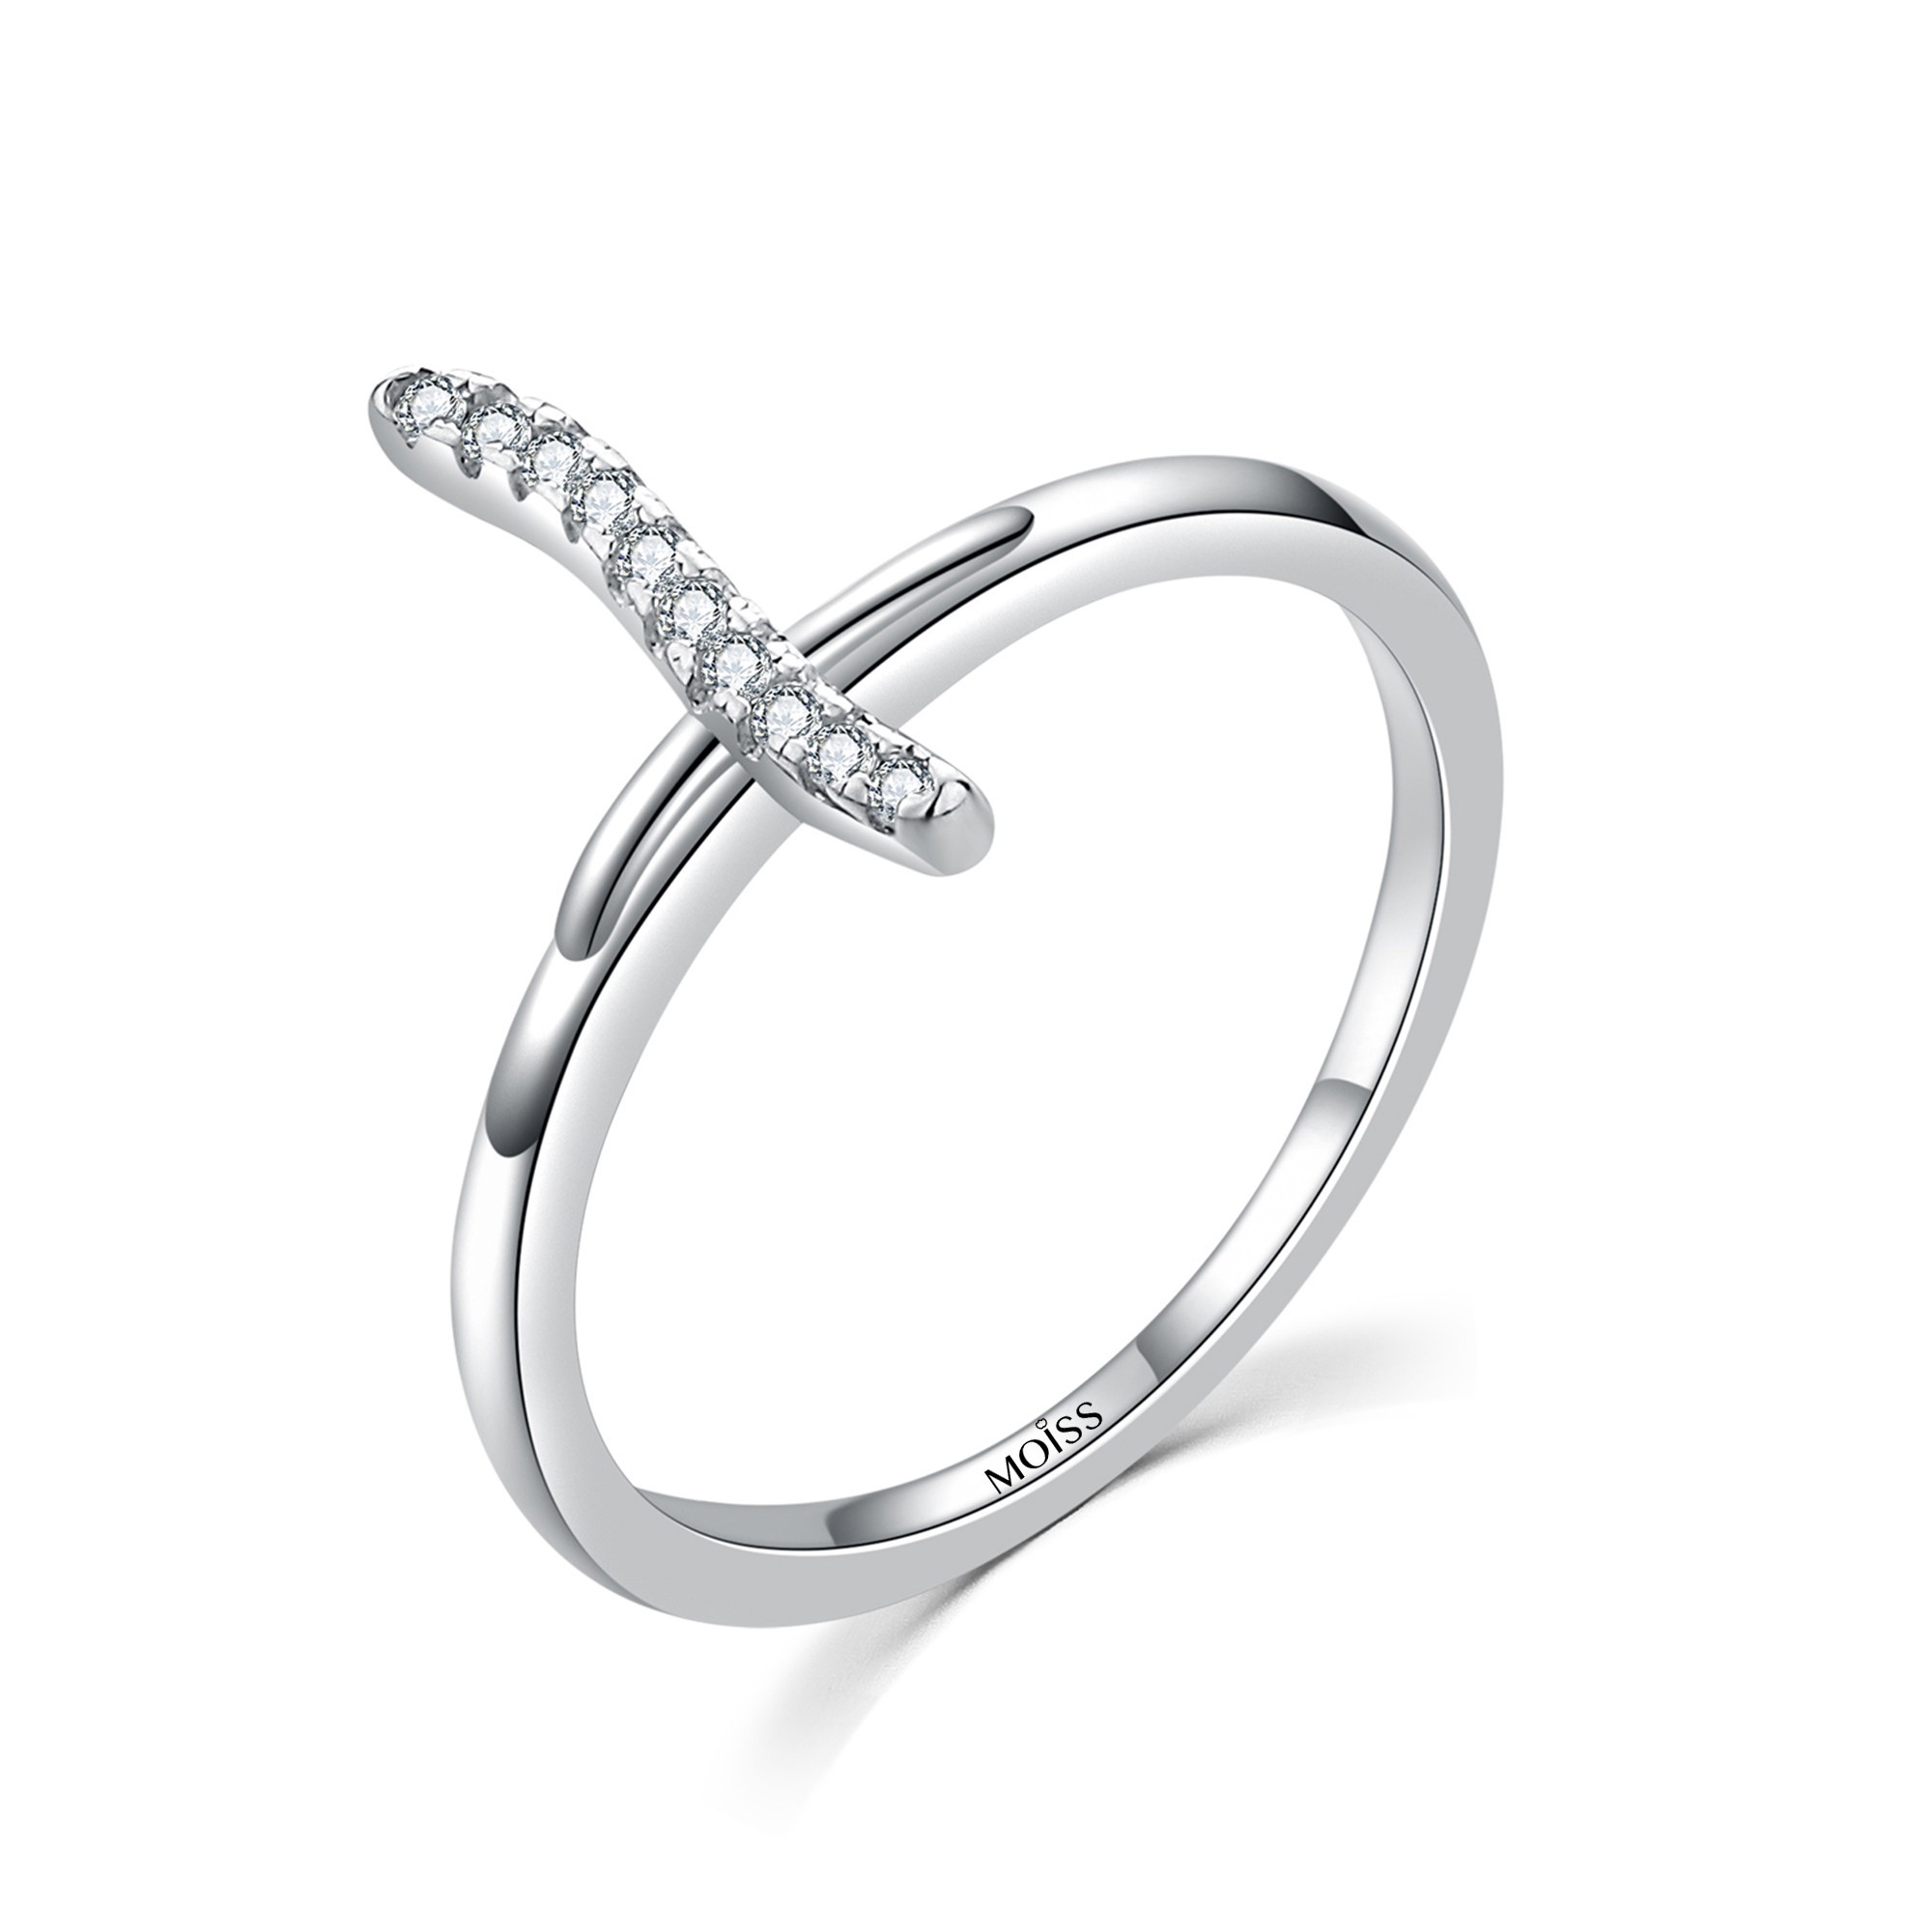 MOISS Moiss stříbrný prsten s bílým zirkonem KŘÍZEK R0001889 Velikost 59 mm R0001893